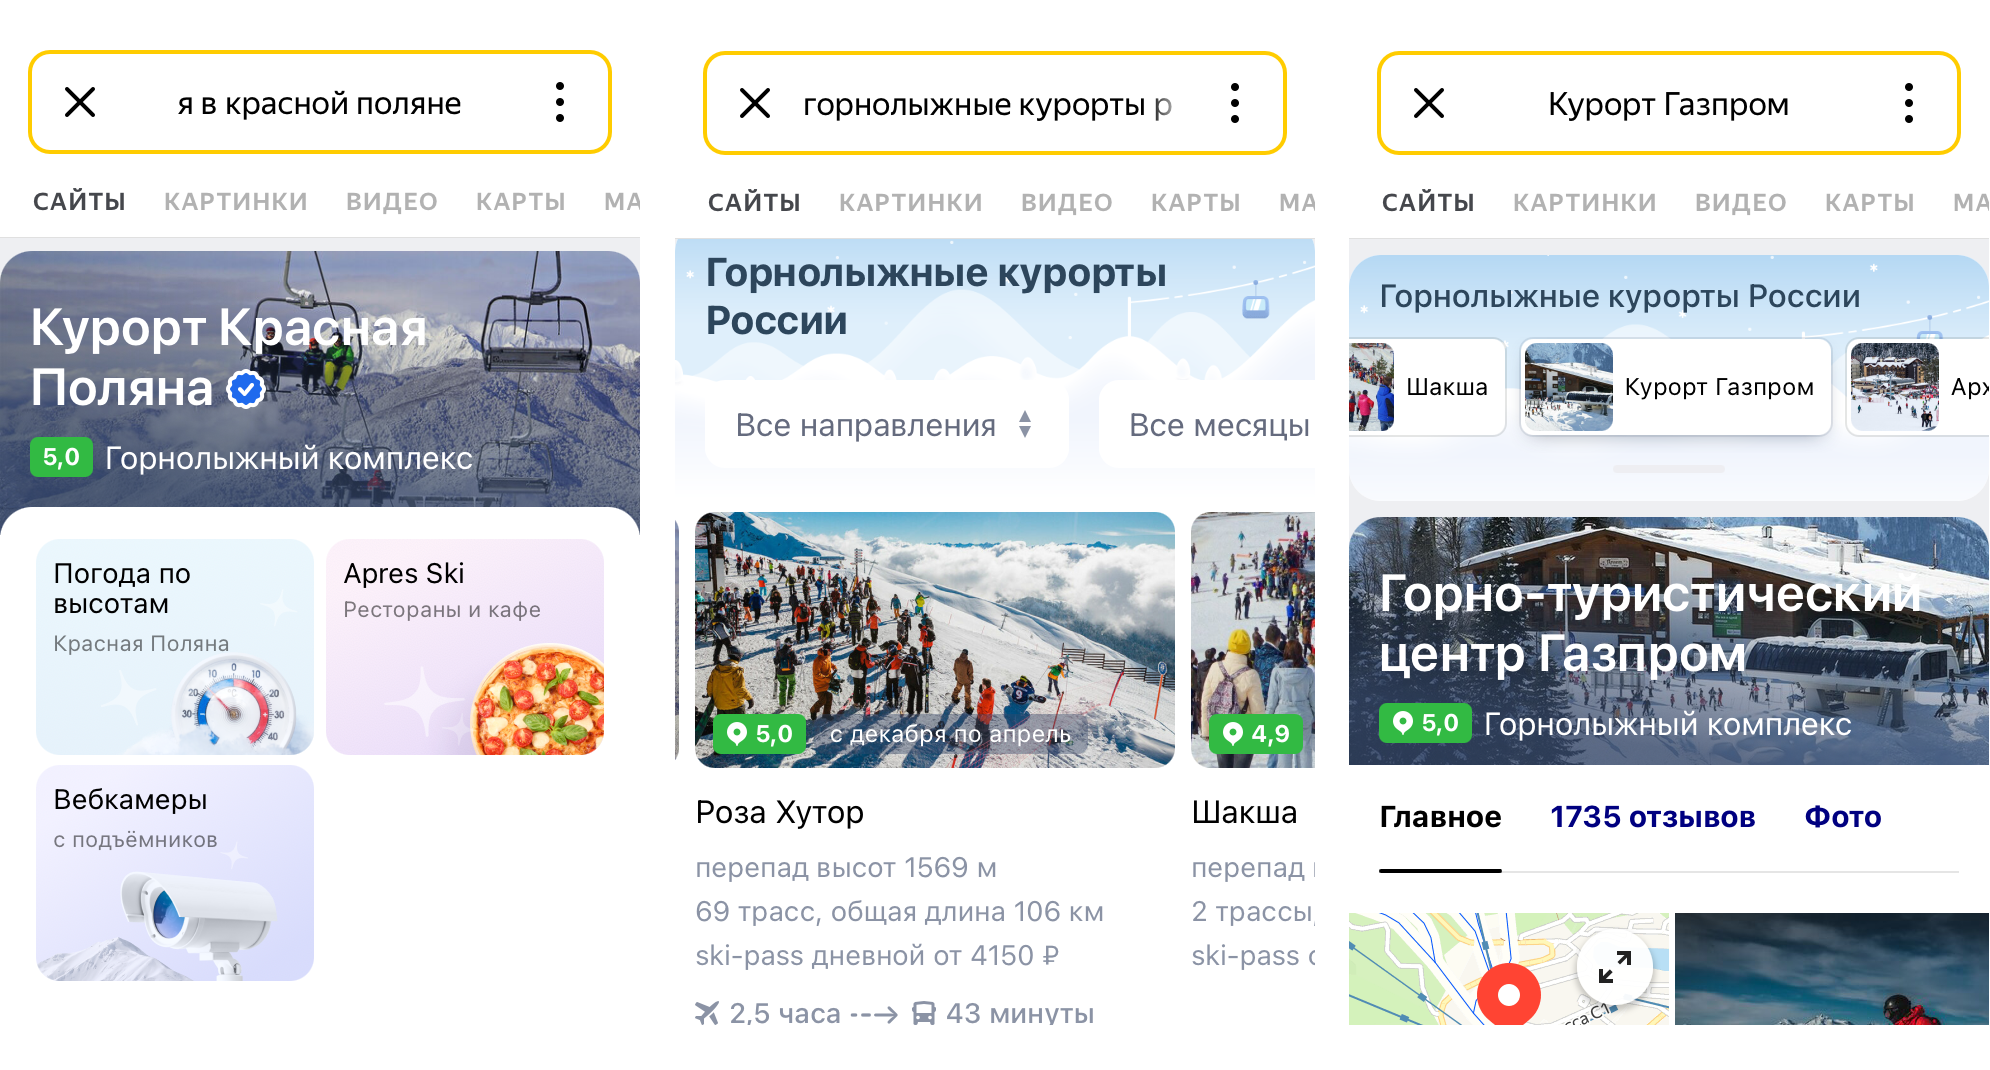 Яндекс выпустил гид по российским горнолыжным курортам